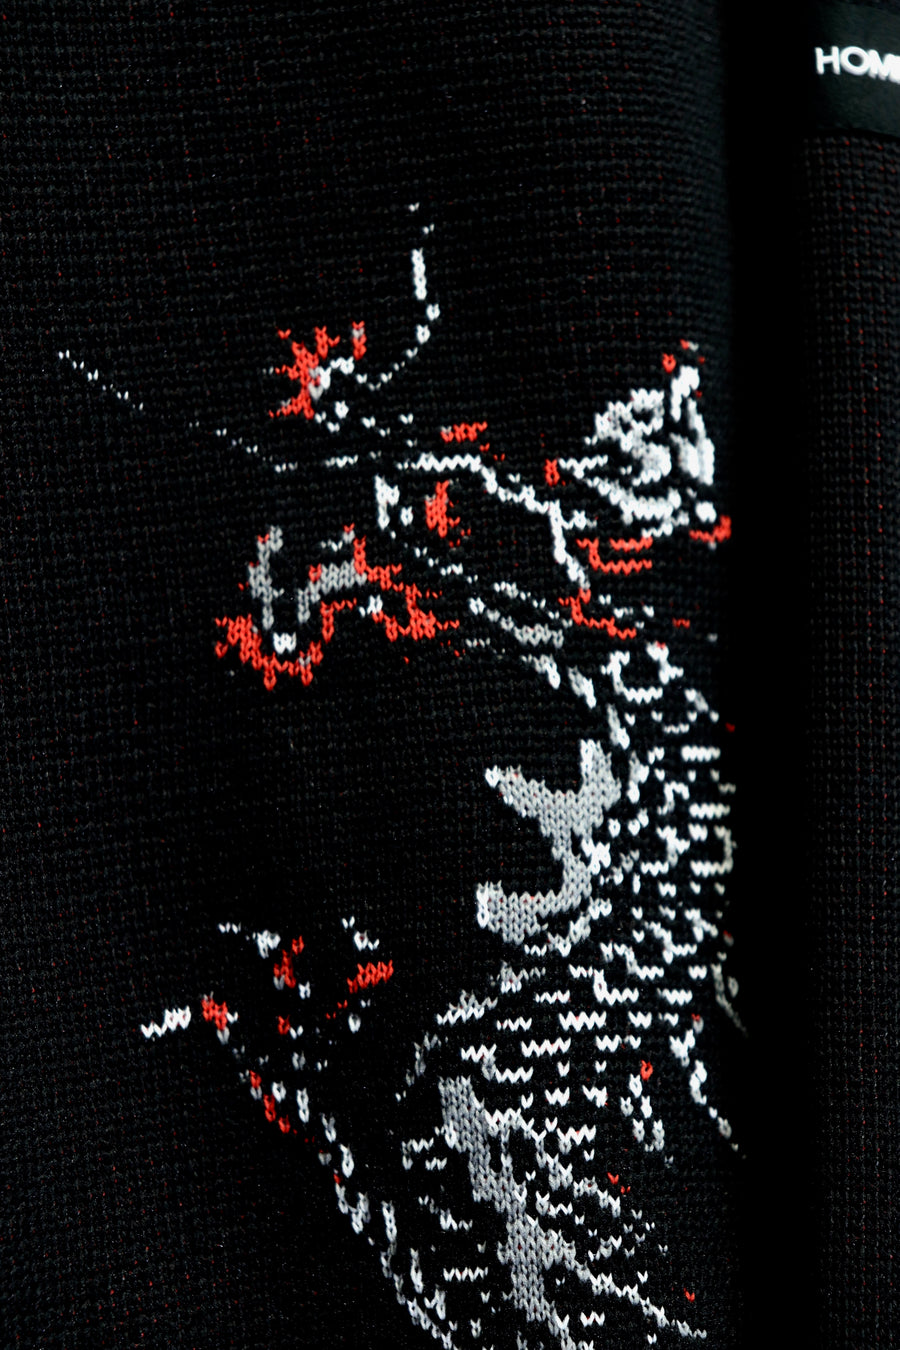 SYU.HOMME/FEMM  Dragon knit shirts（BLACK）